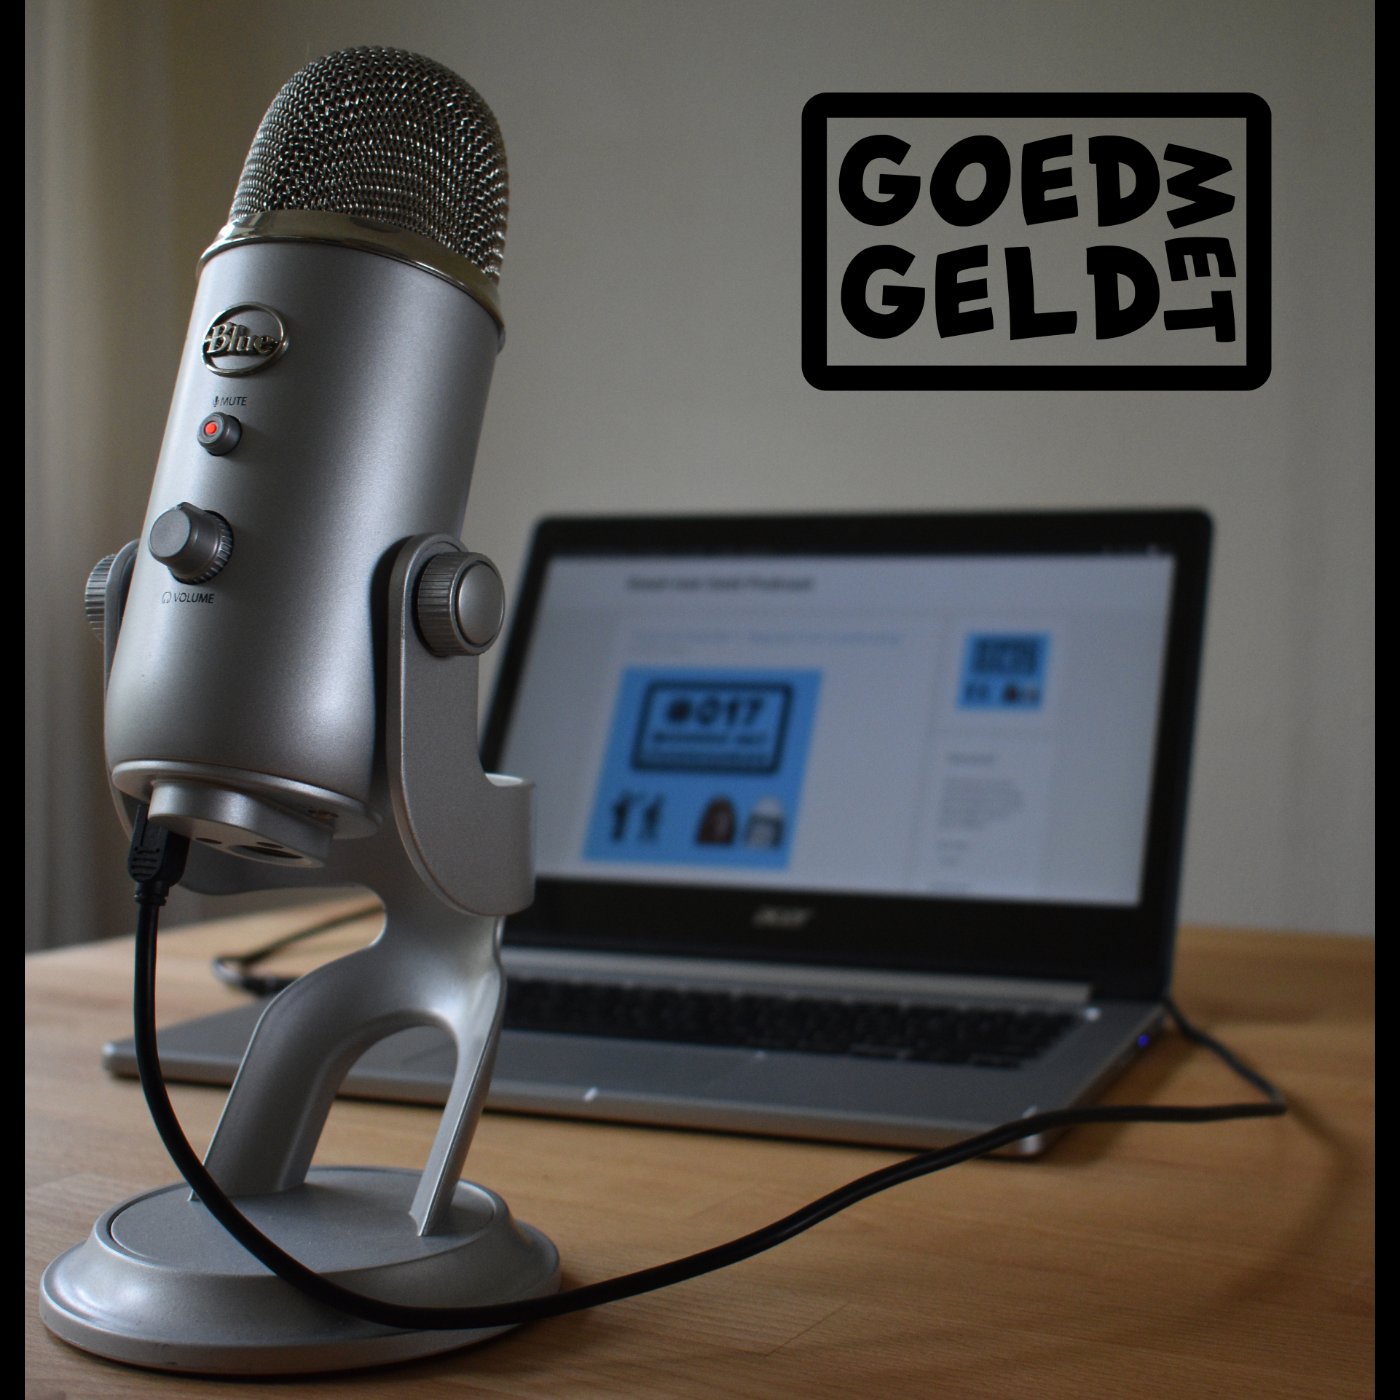 Goed met Geld Podcast logo